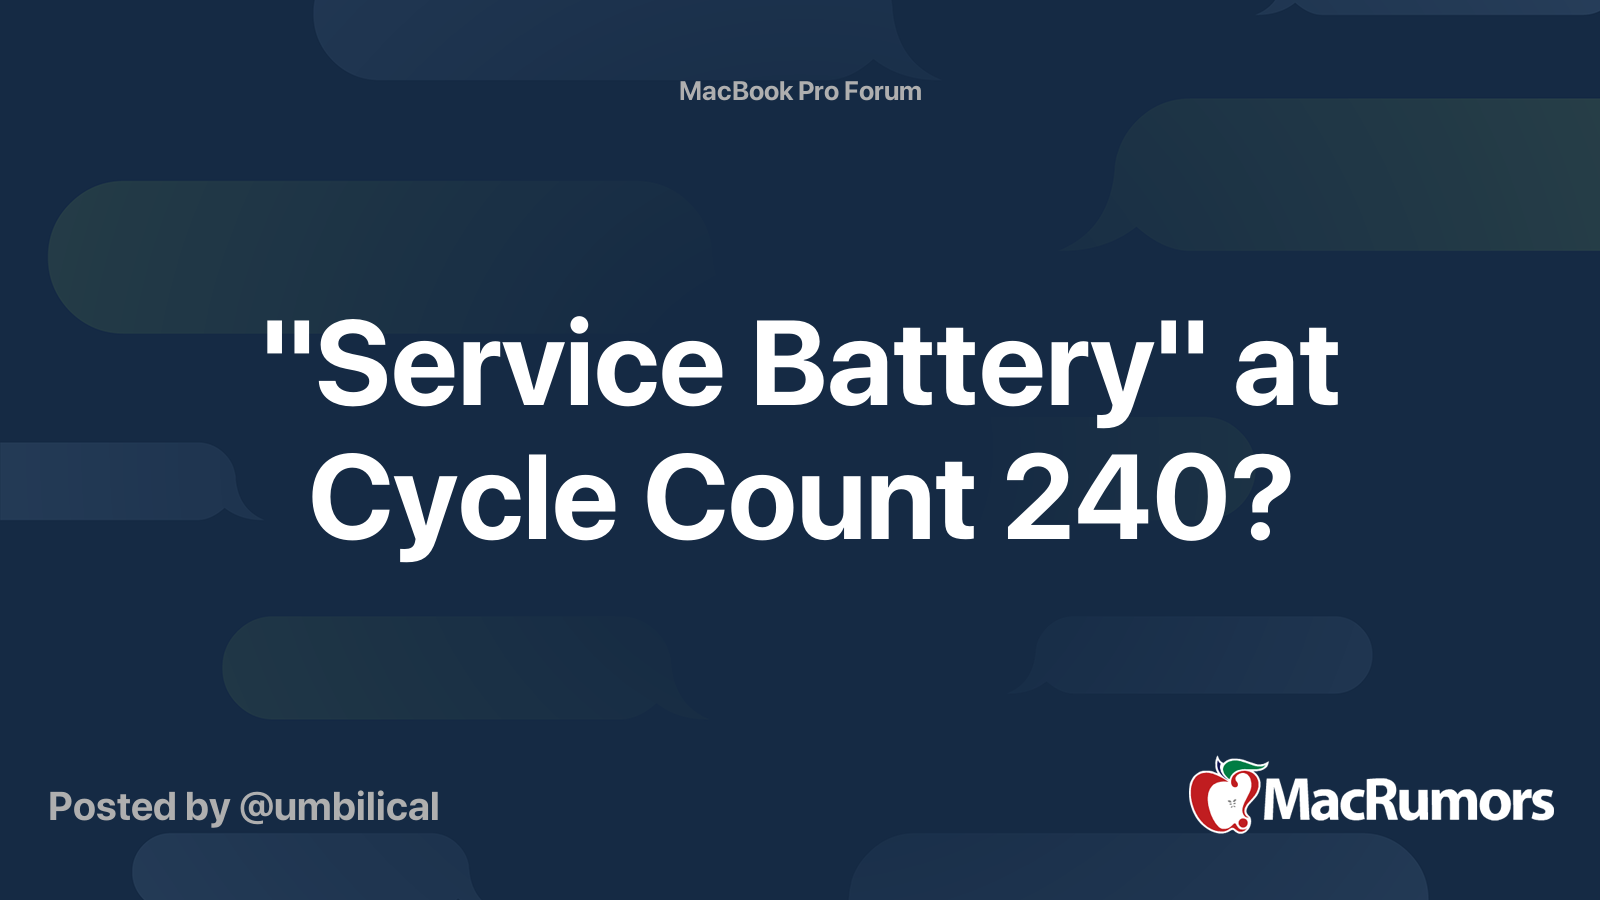 Battery" at Cycle Count 240? | MacRumors